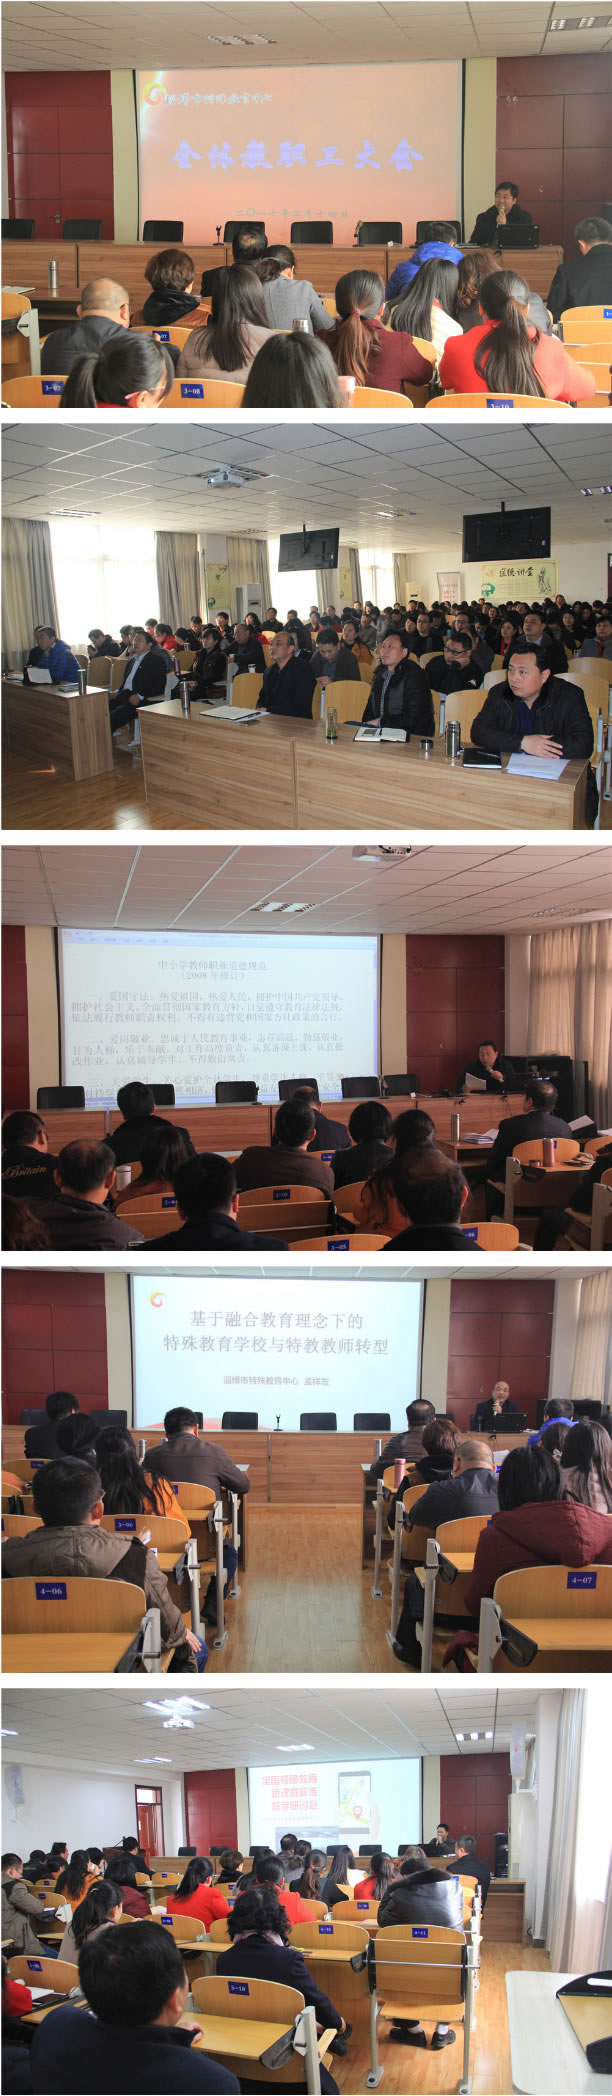 淄博市特殊教育中心组织开展新学期学习教育系列活动